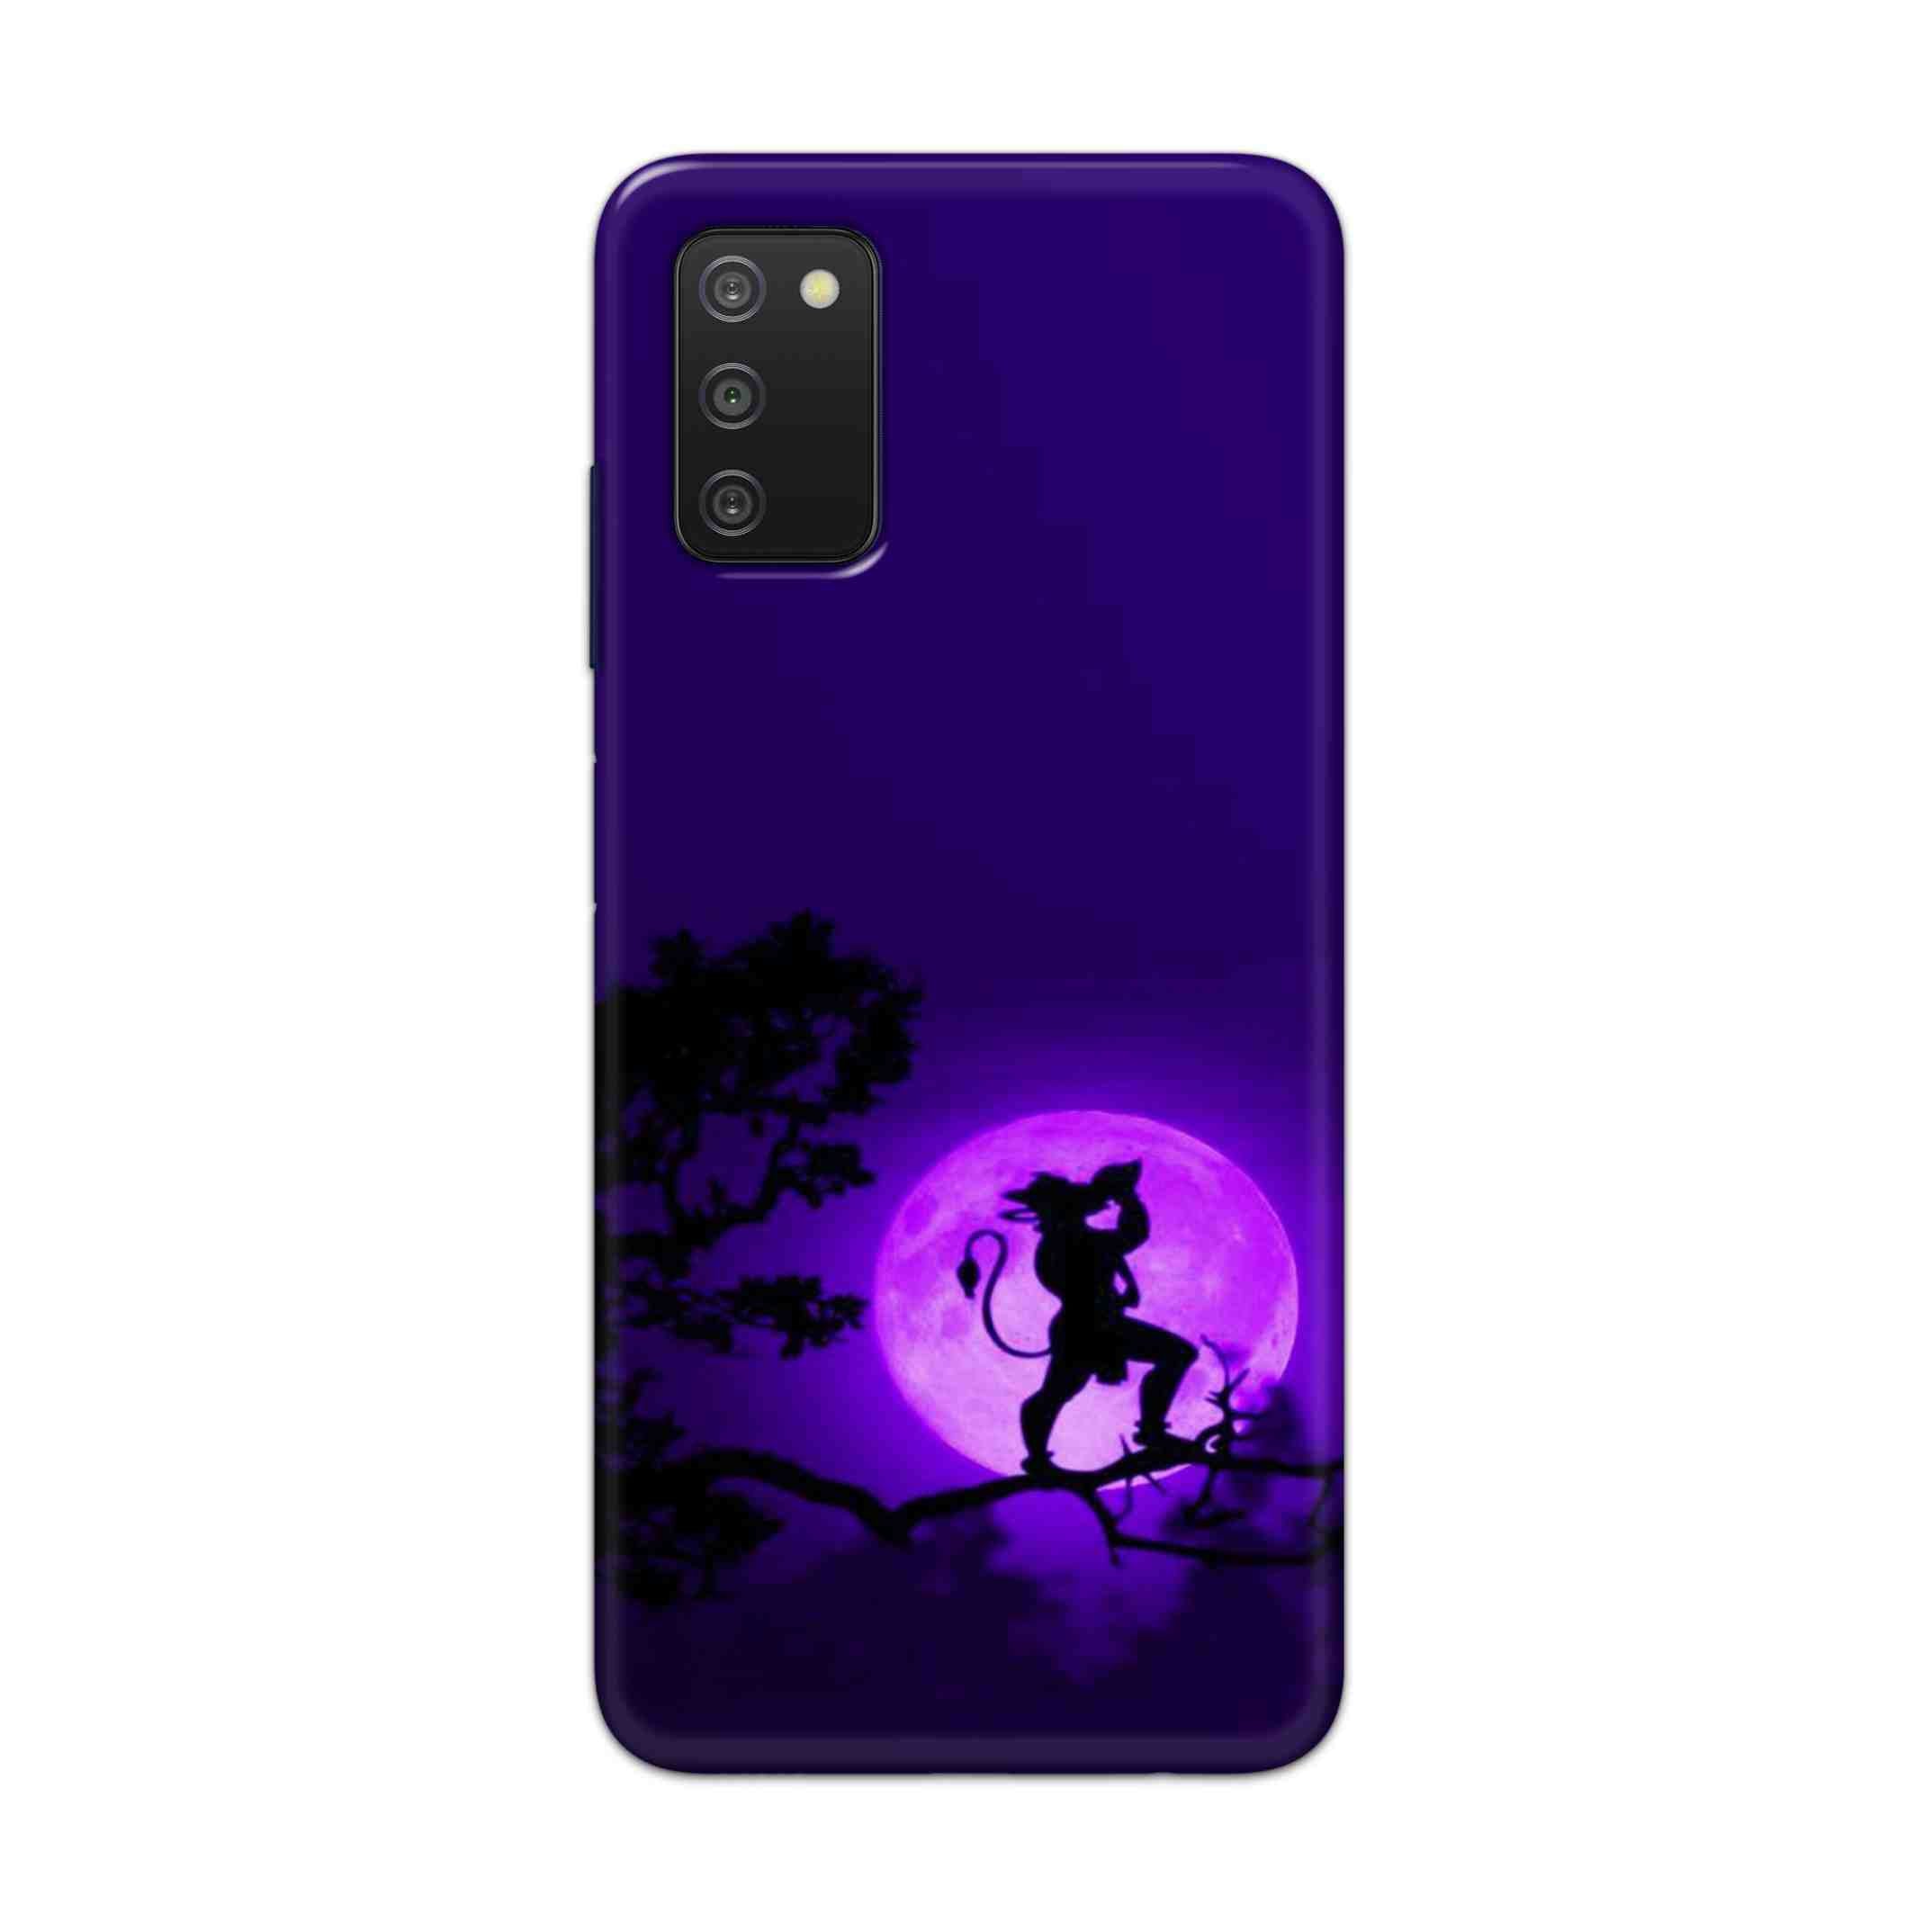 Buy Hanuman Hard Back Mobile Phone Case Cover For Samsung A03s Online